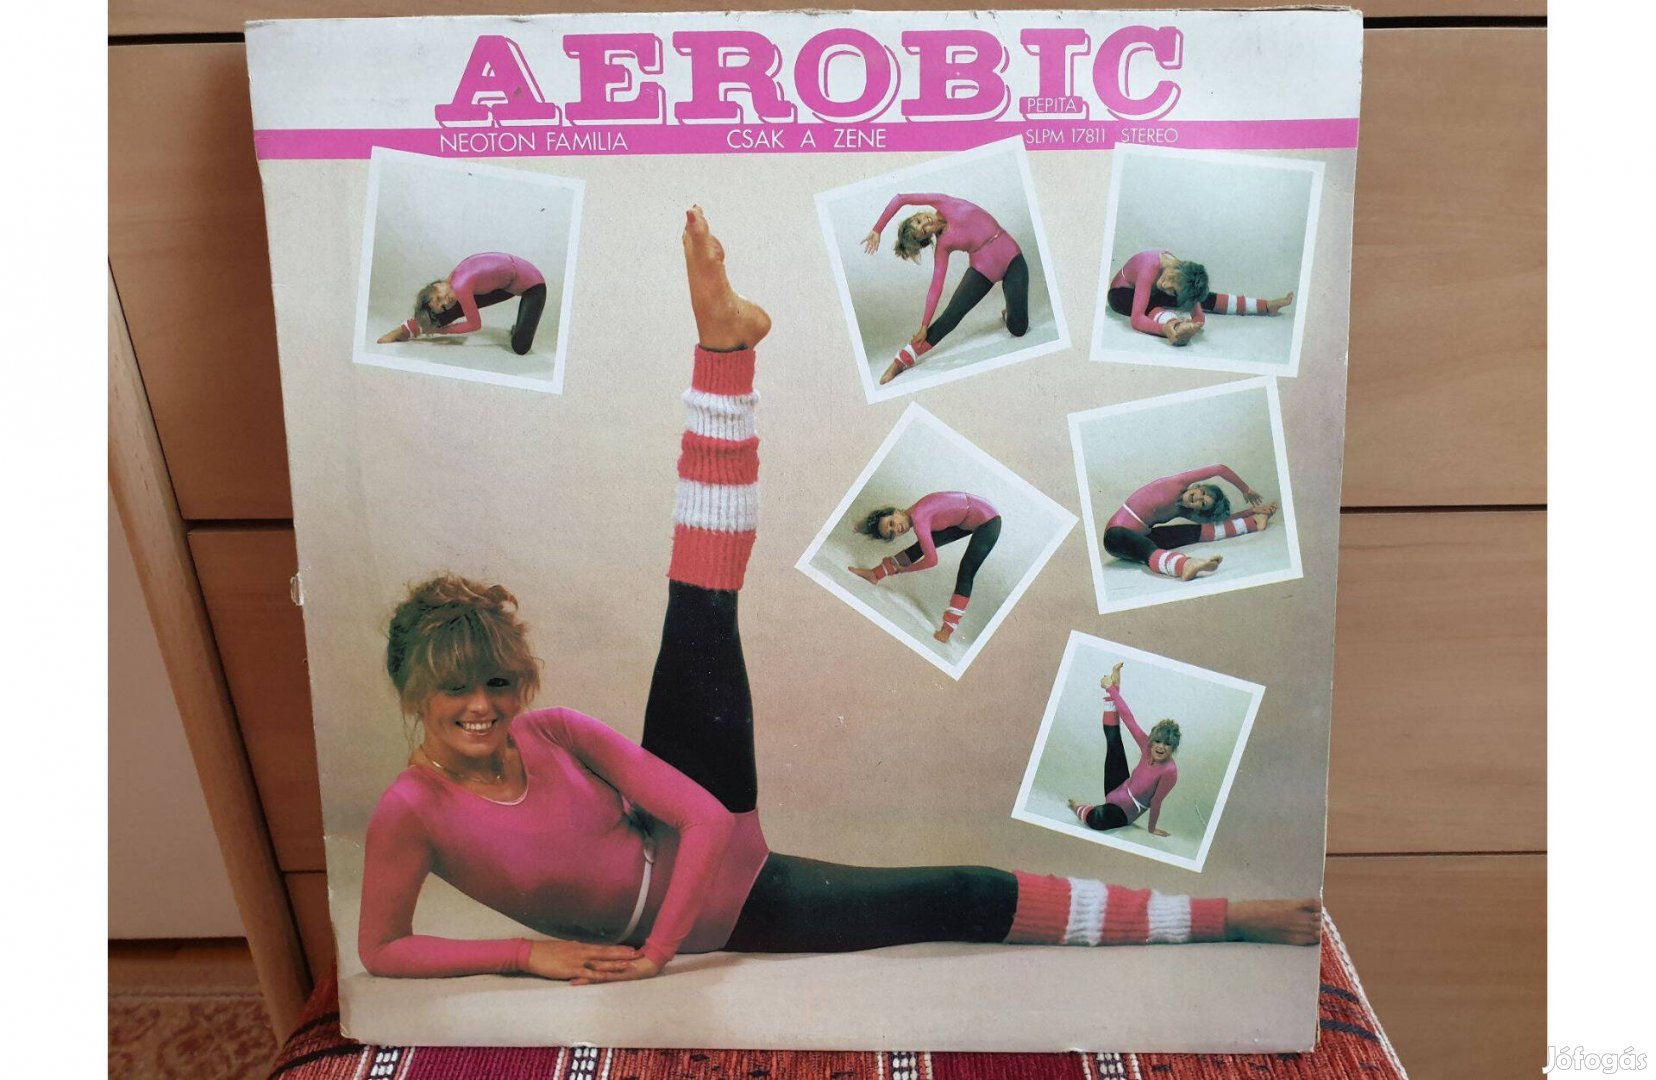 Neoton Família - Aerobic - Csak a zene hanglemez bakelit lemez Vinyl